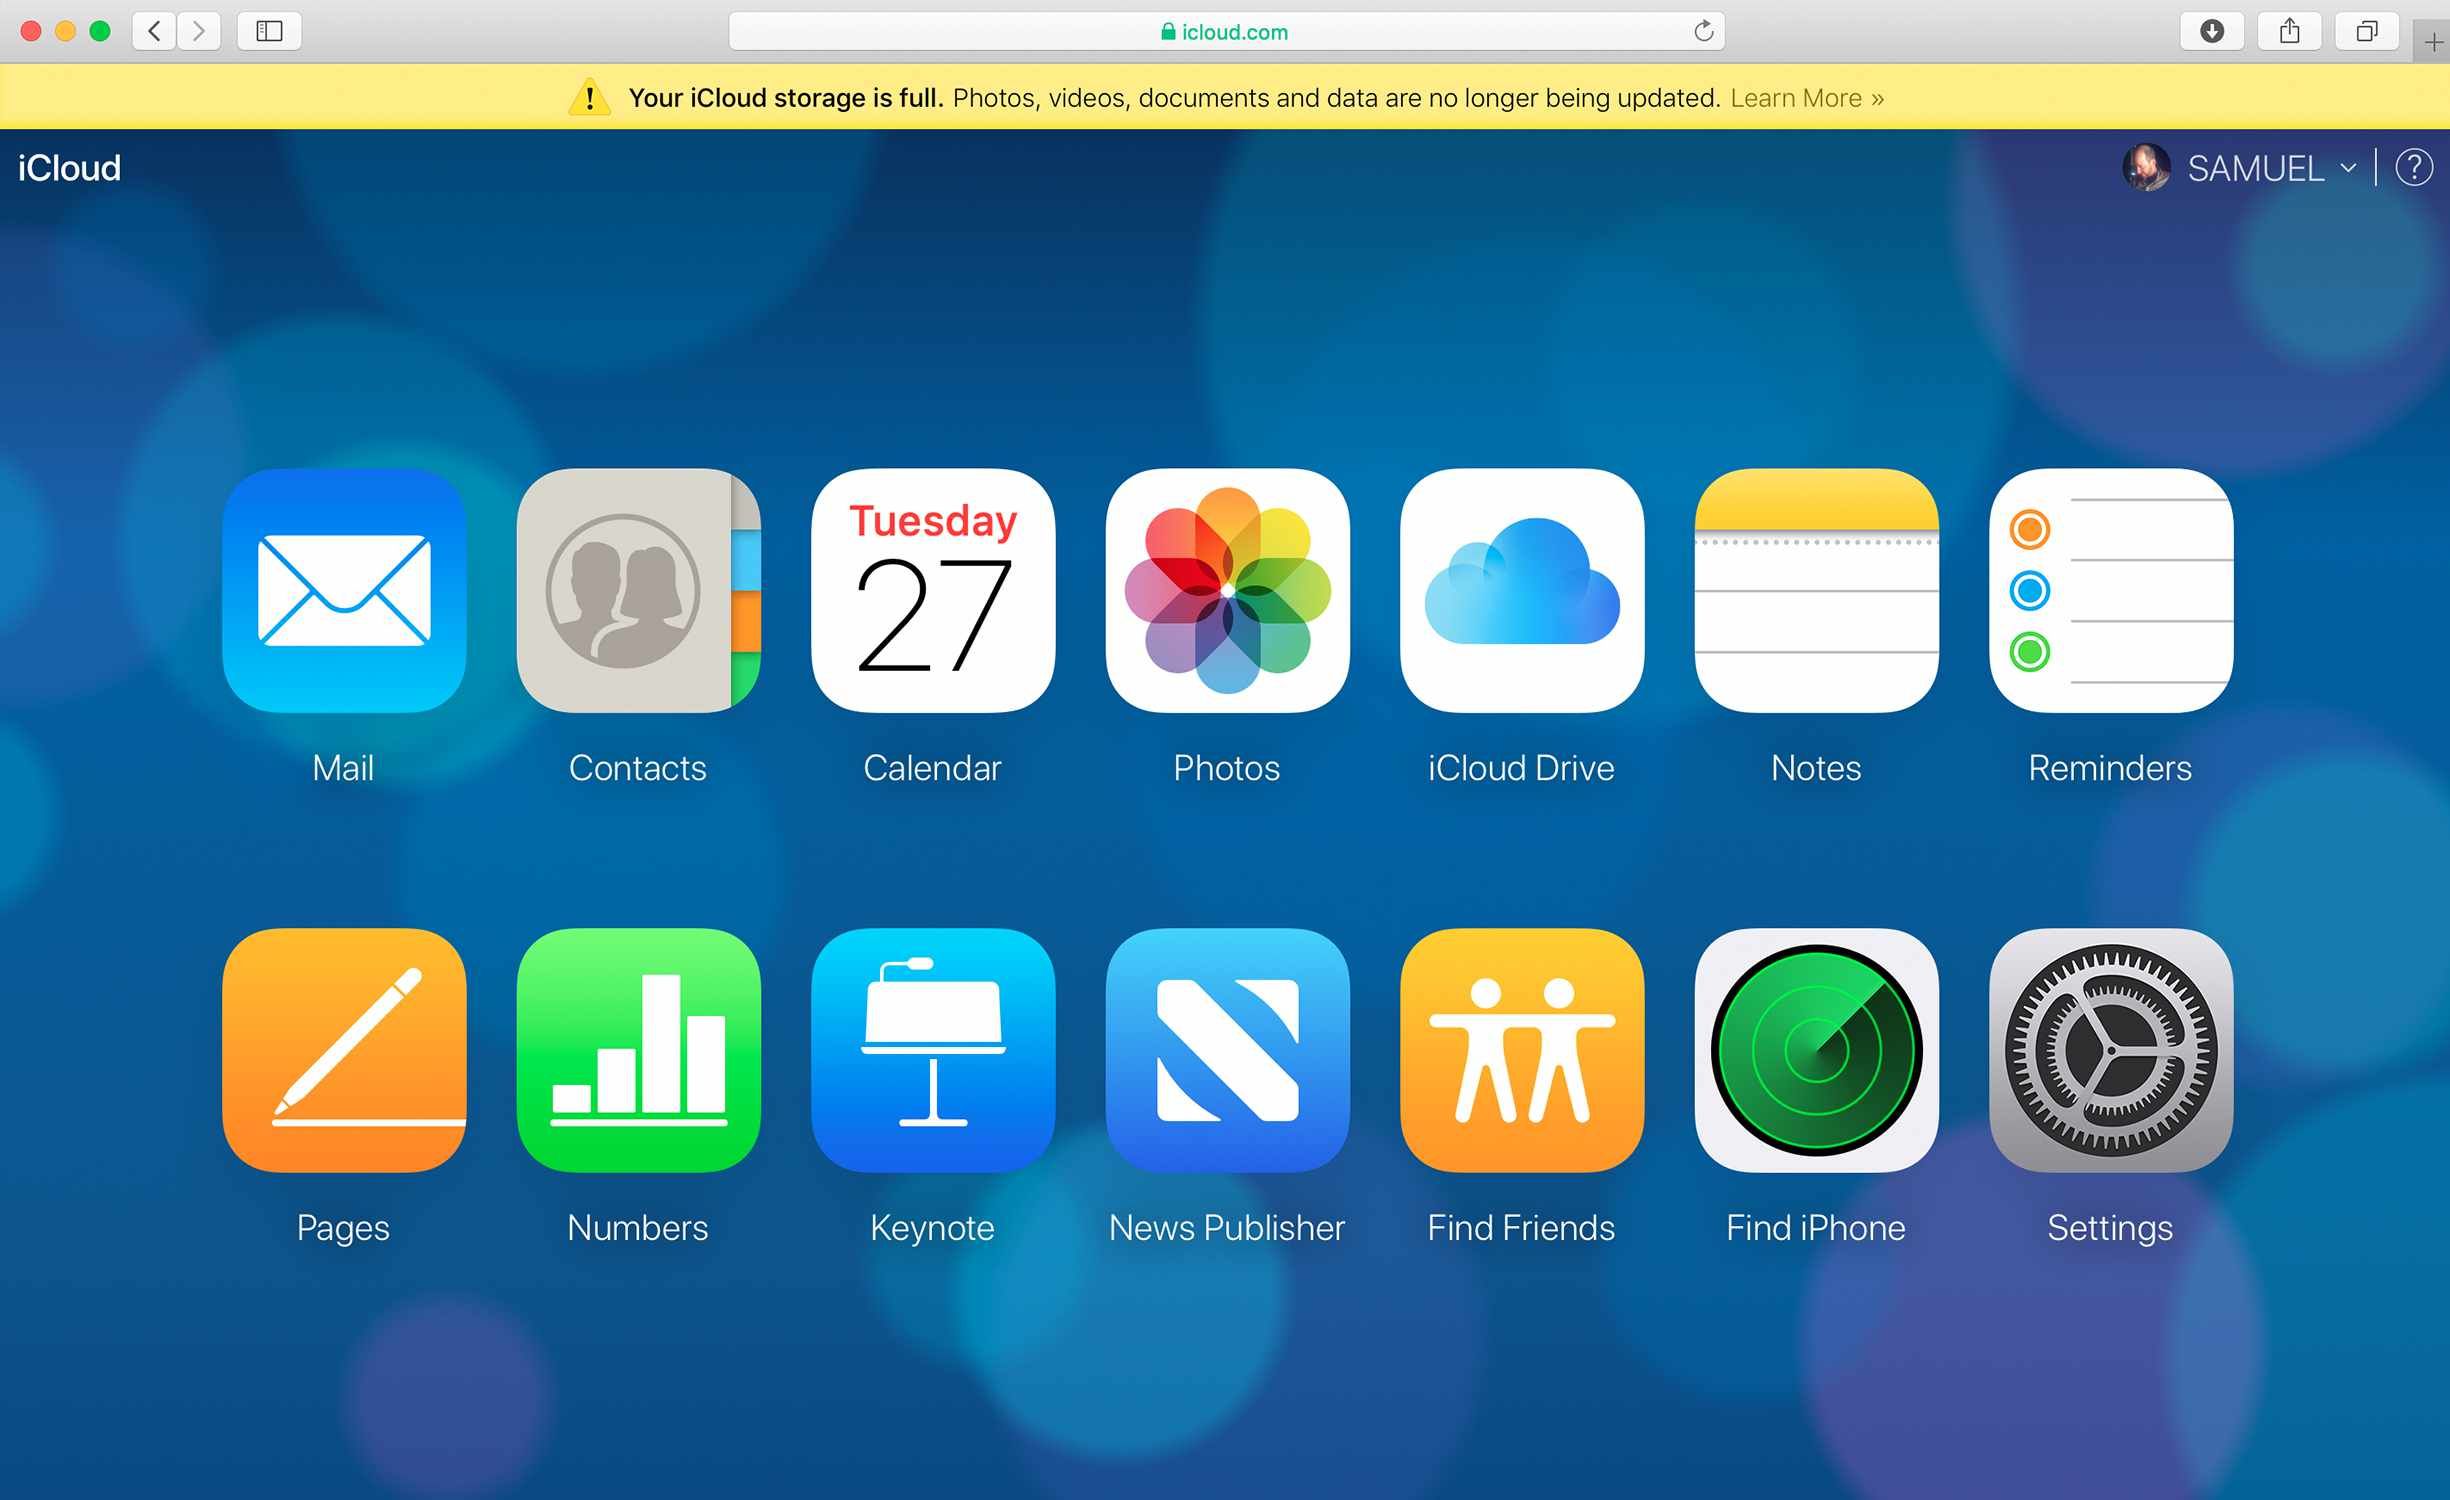 Снимок экрана: панель инструментов сайта iCloud